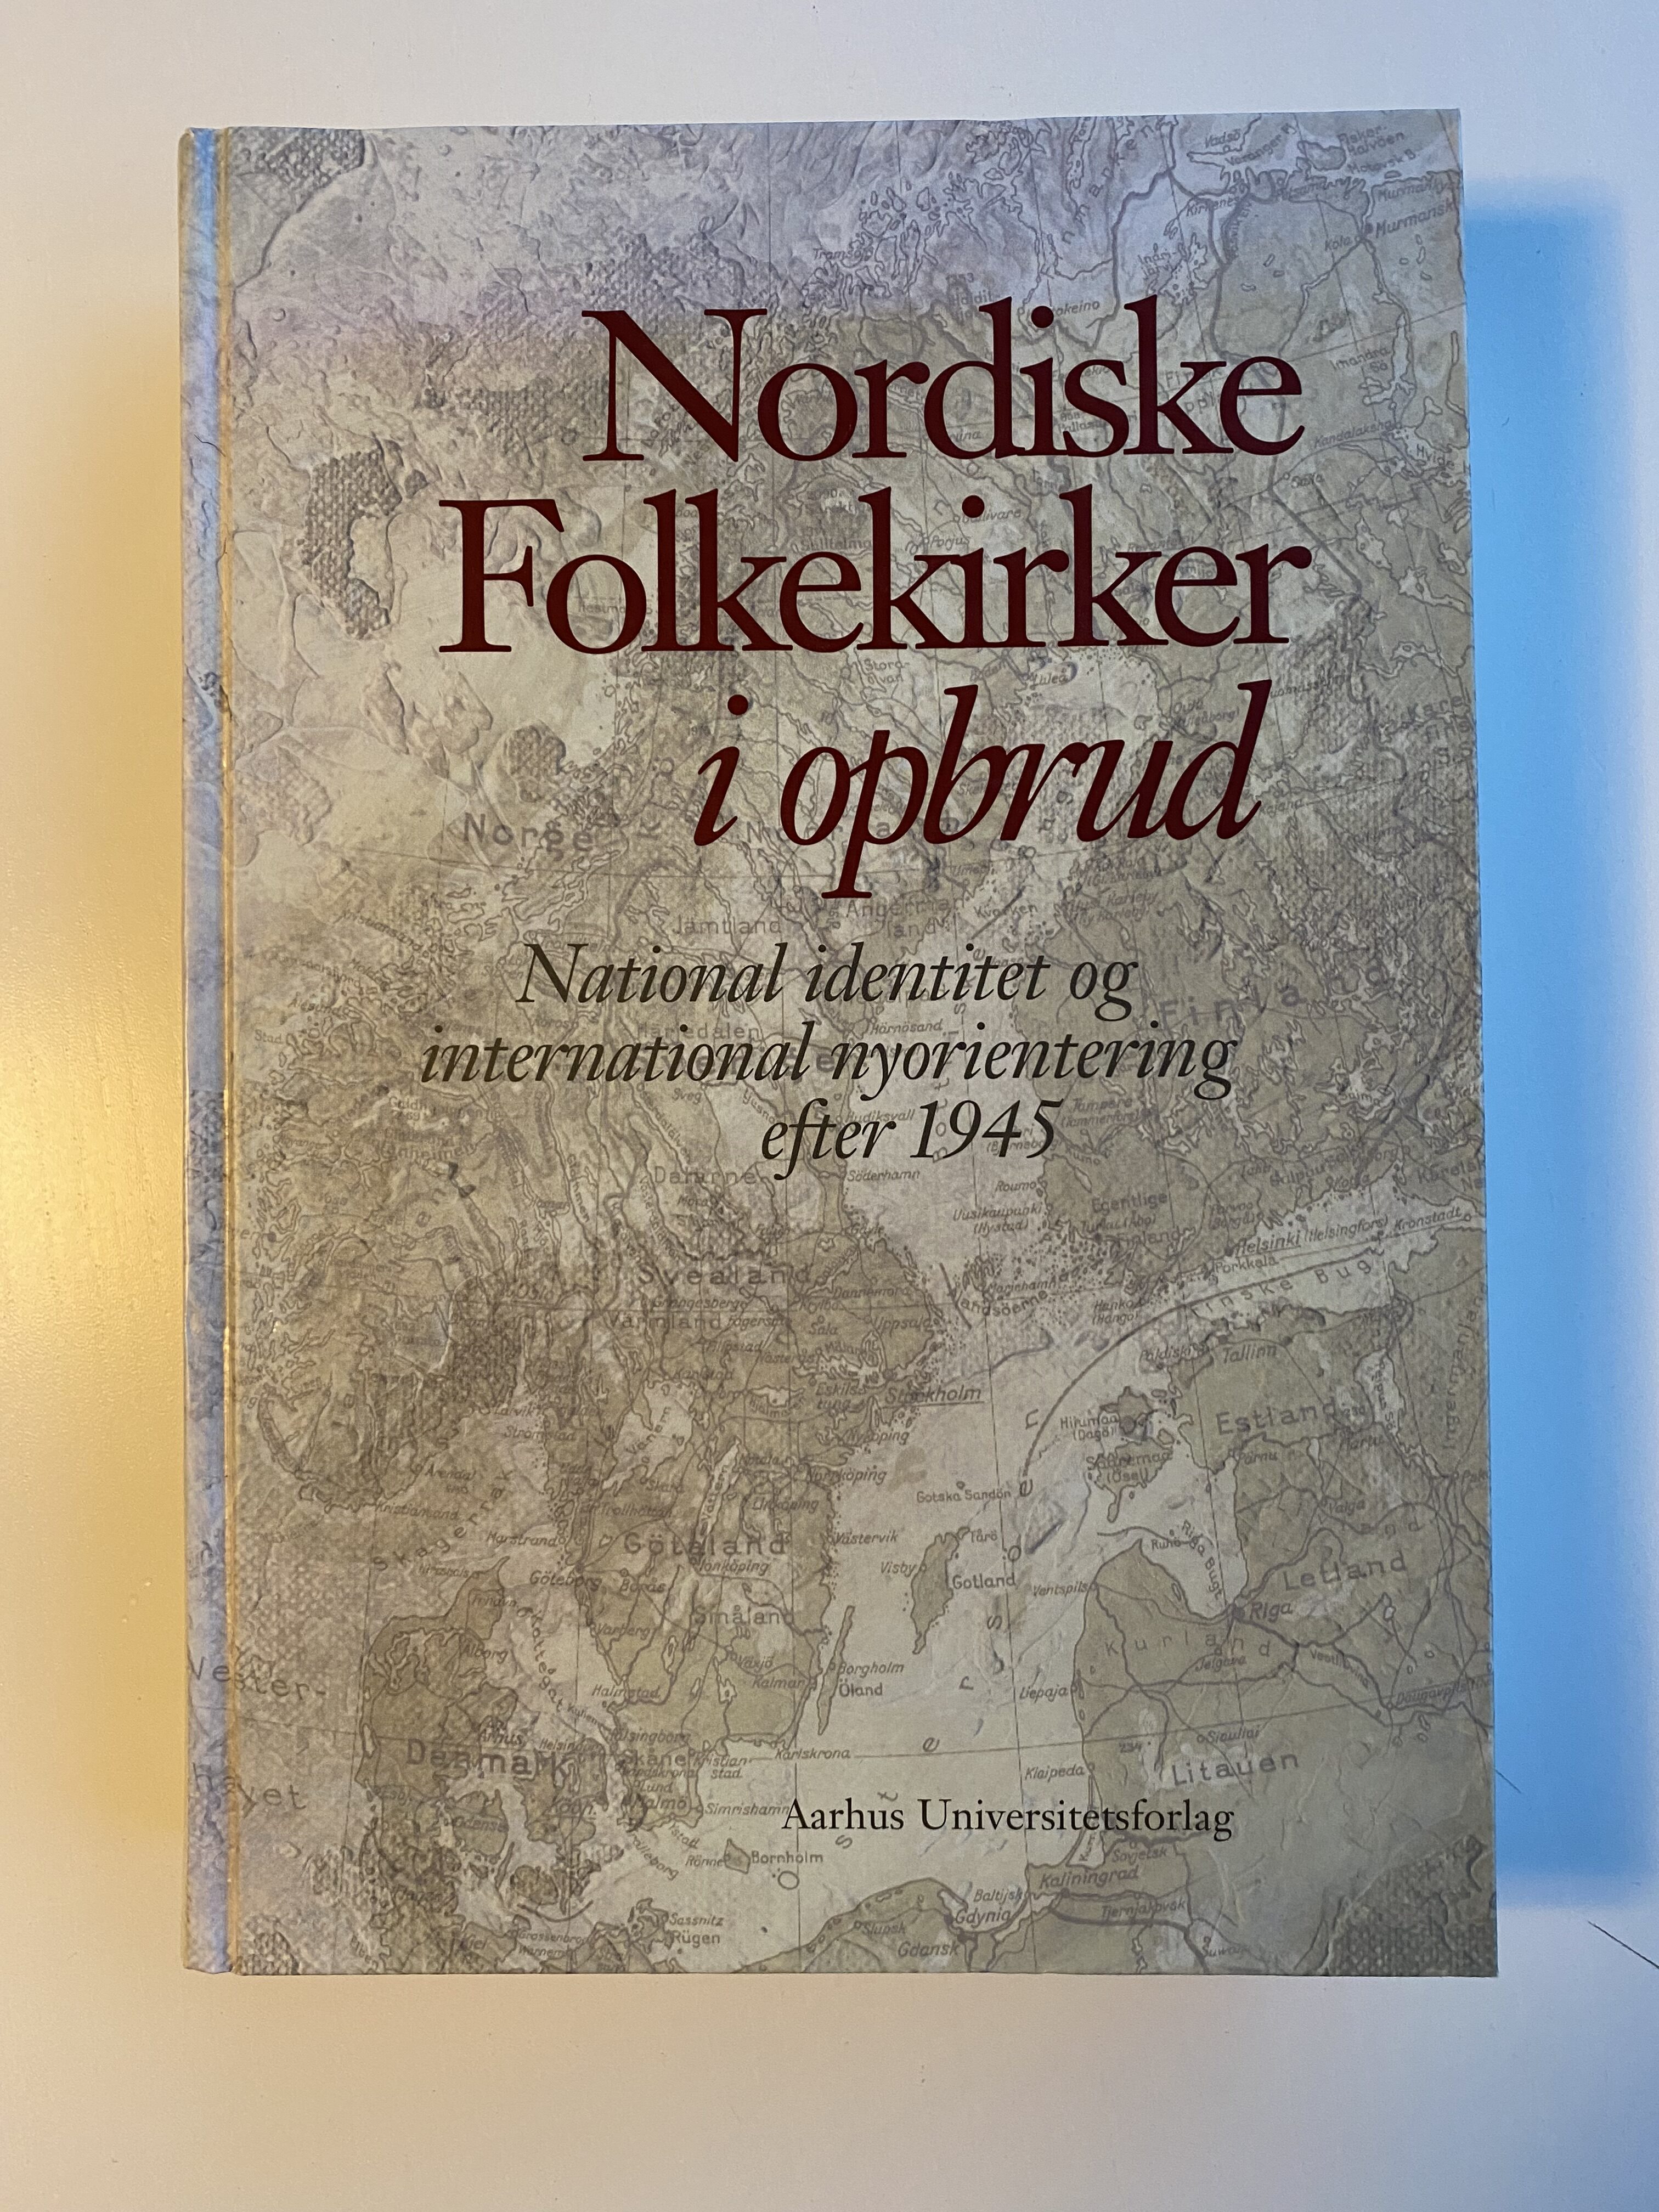 Køb "Nordiske Folkekirker i opbrud 2001" (forside)